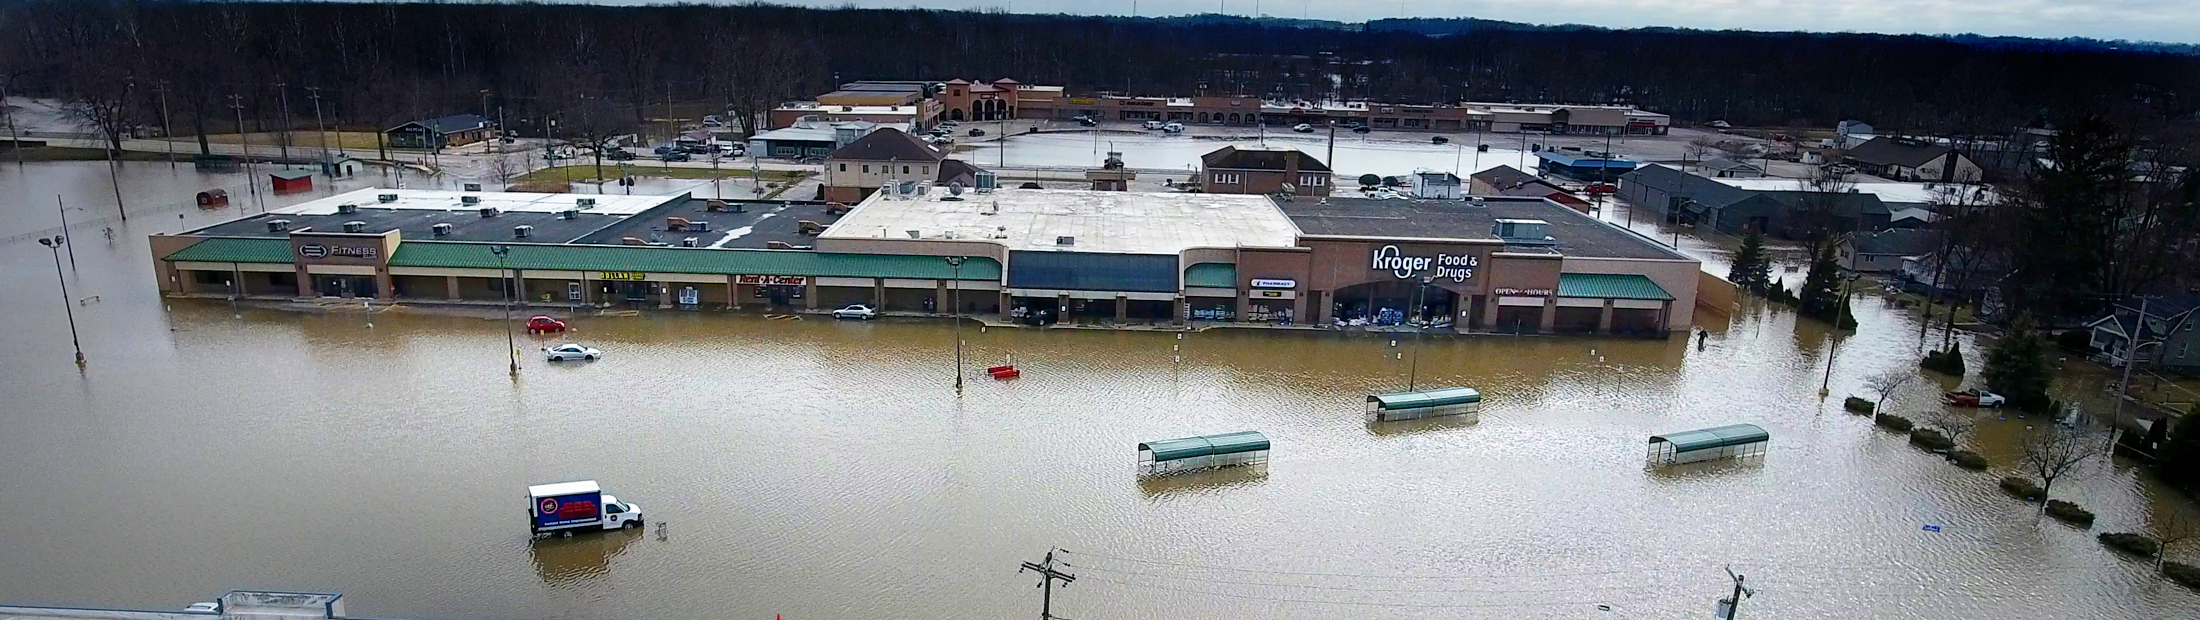 Photo of flooding